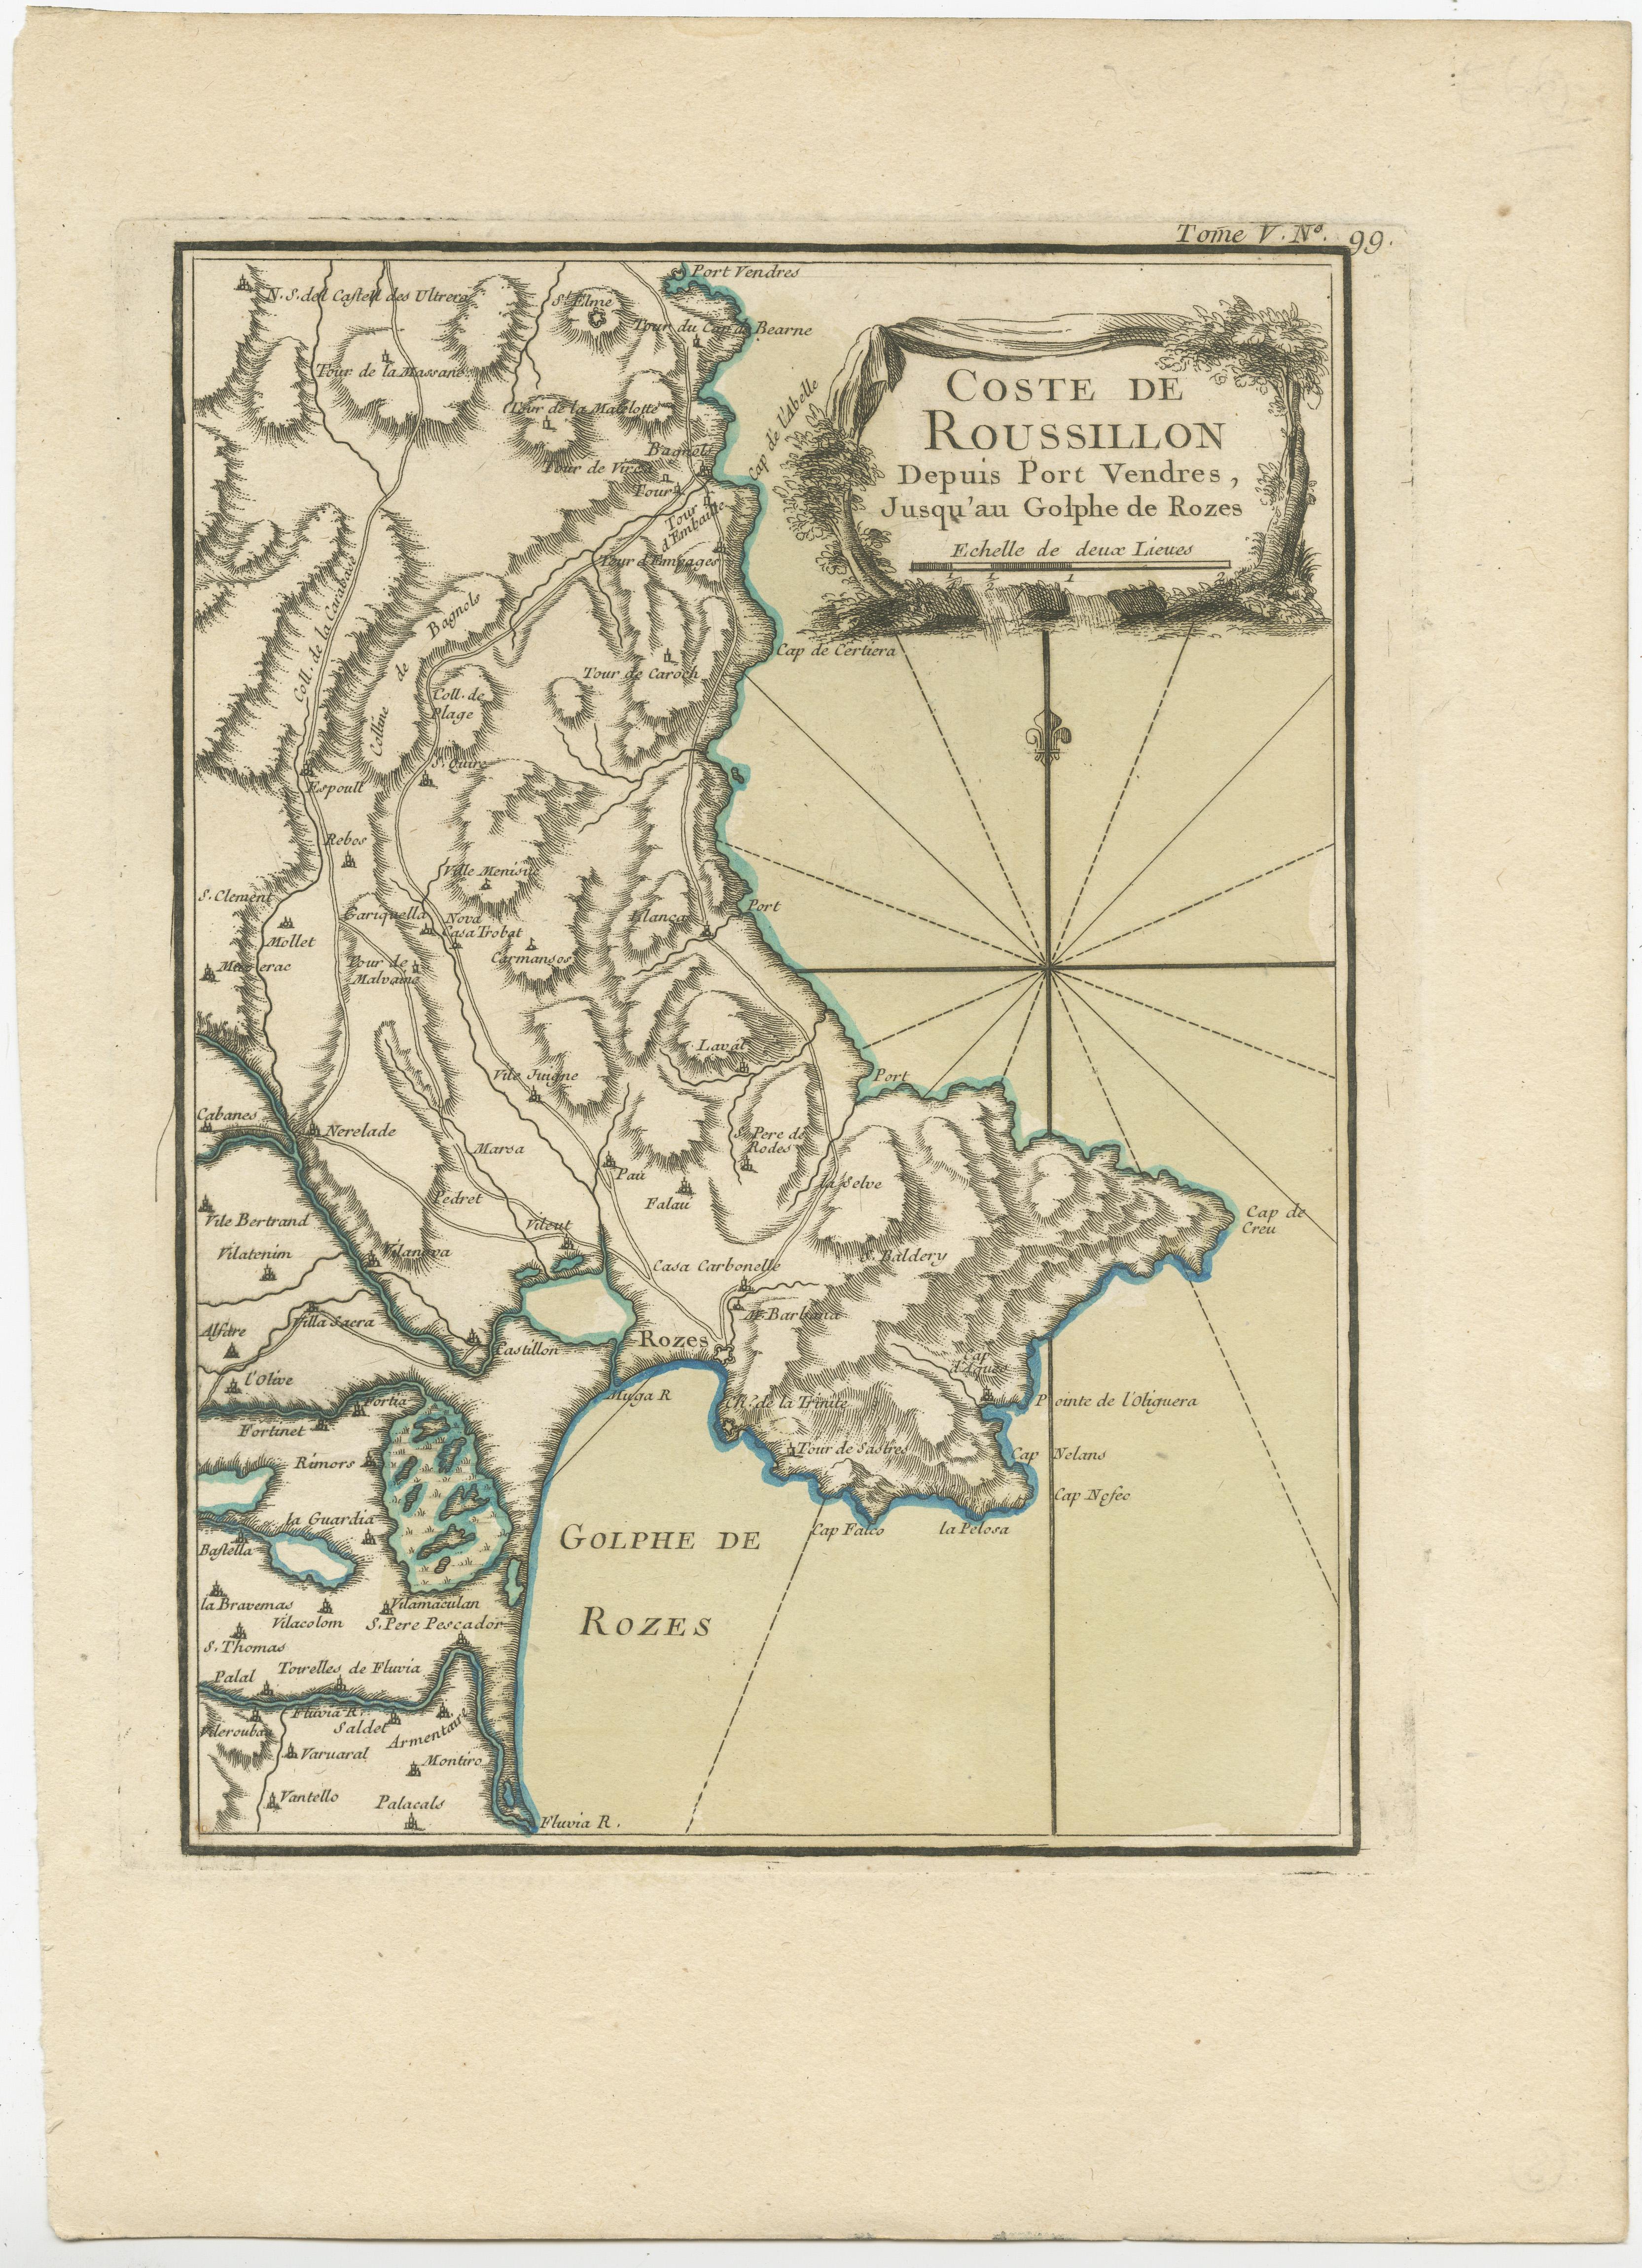 Antique map titled 'Coste de Roussillon depuis Port Vendres, jusqu'au golphe de Rozes'. Original map of the coast of Roussillon, France. This map originates from 'Le Petit Atlas Maritime (..)' by J.N. Bellin. Published 1764. 

Bellin was an